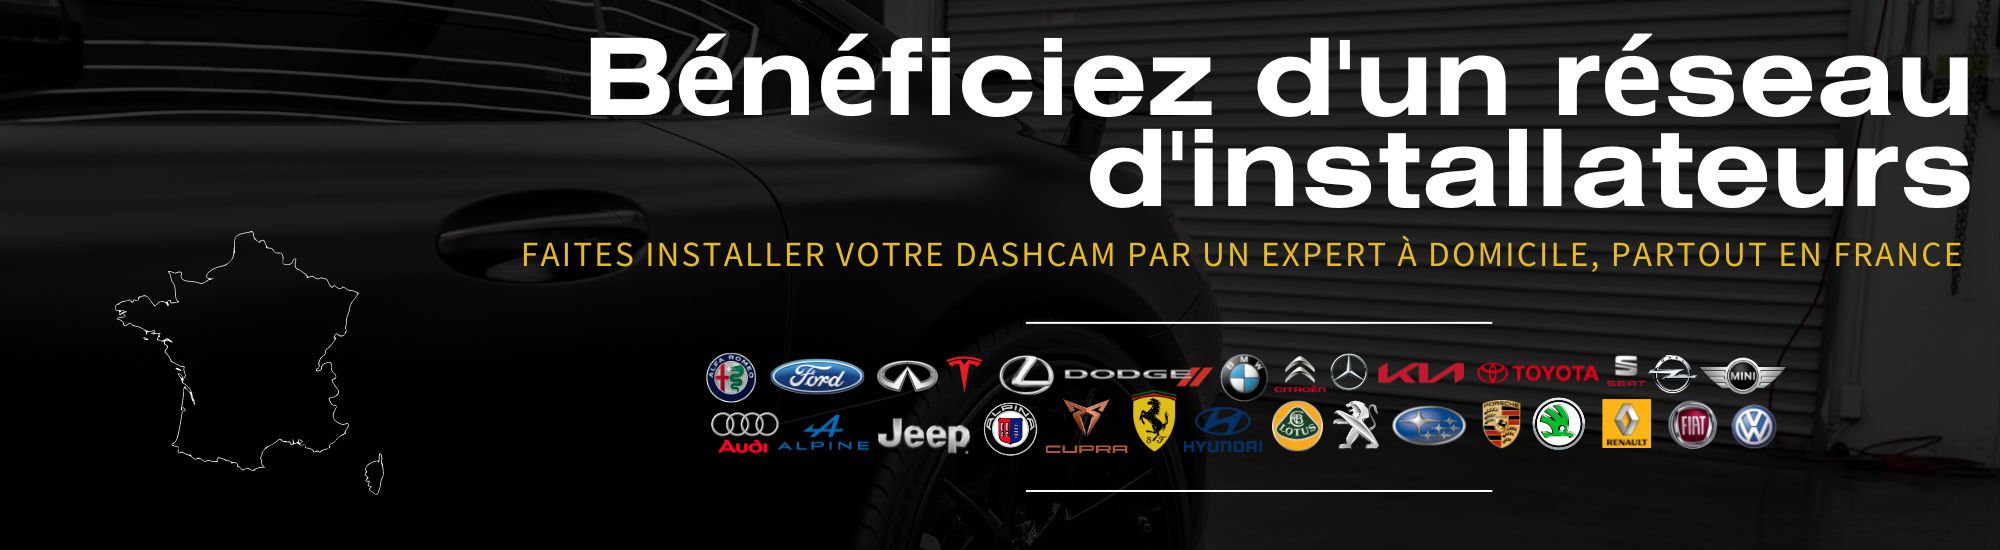 faites installer votre dashcam blackvue installateurs agréés partout en France 